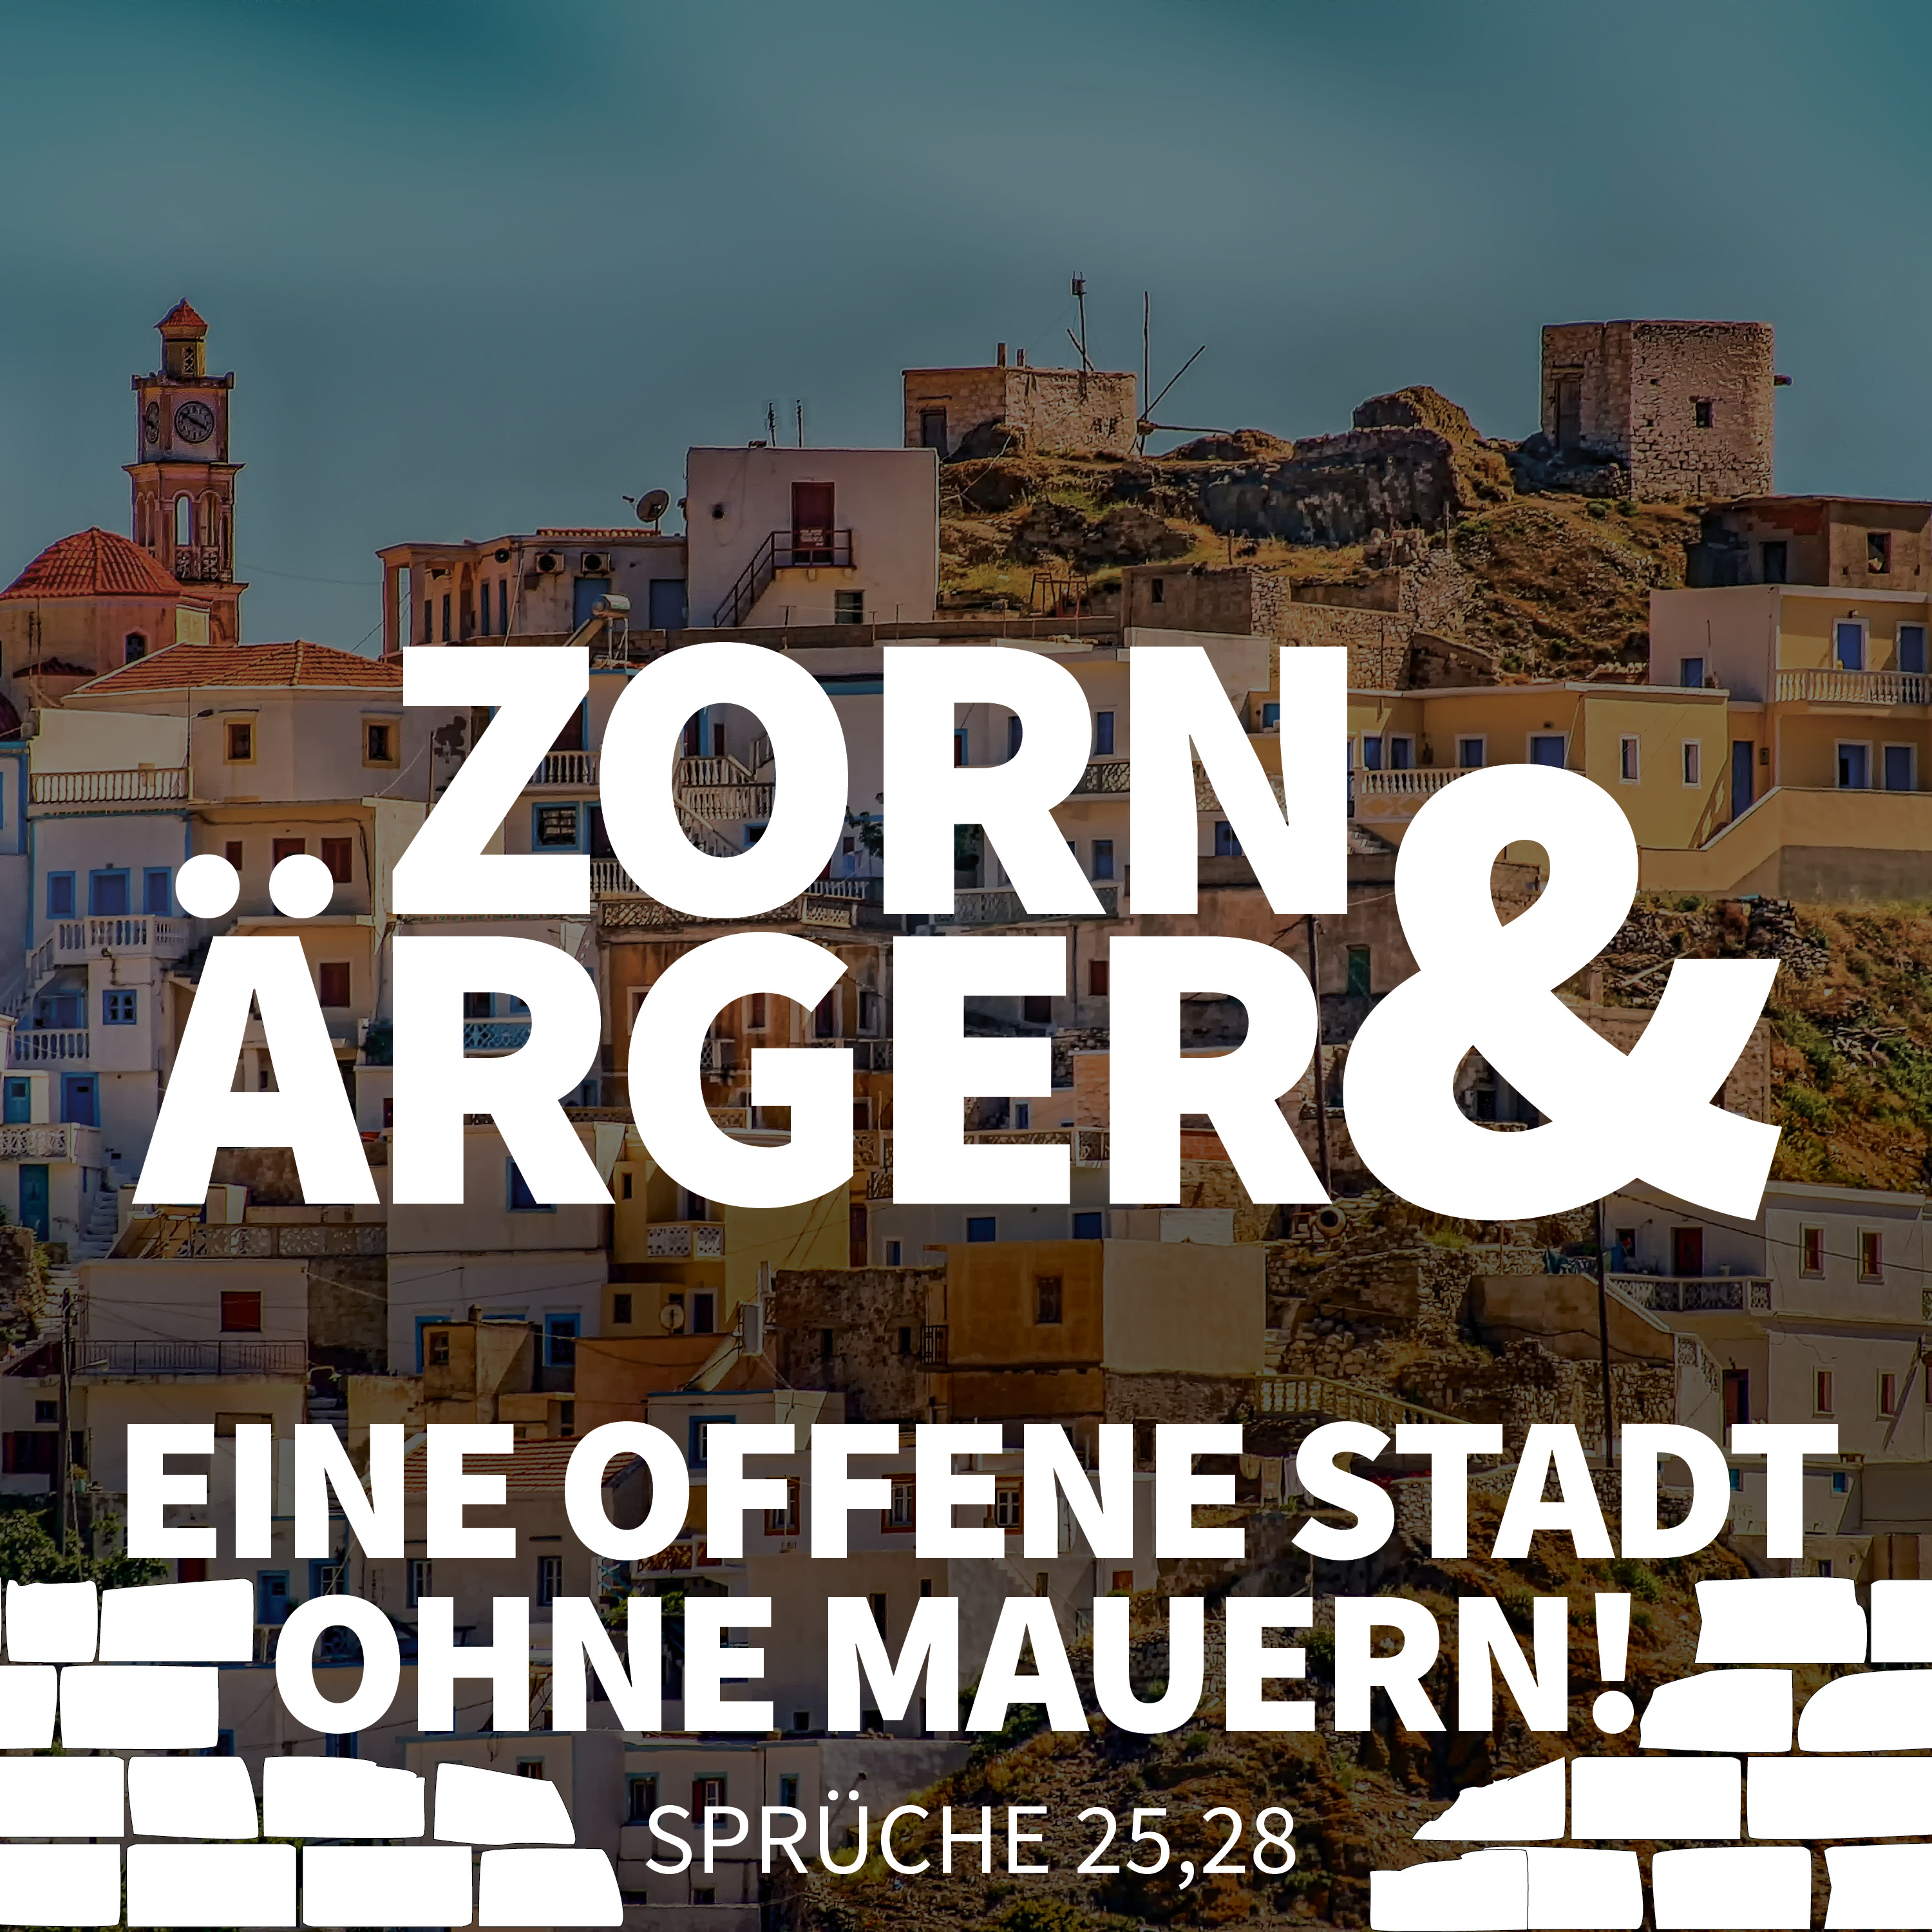 JOBST BITTNER - Zorn & Ärger: Eine offene Stadt ohne Mauern! hero artwork